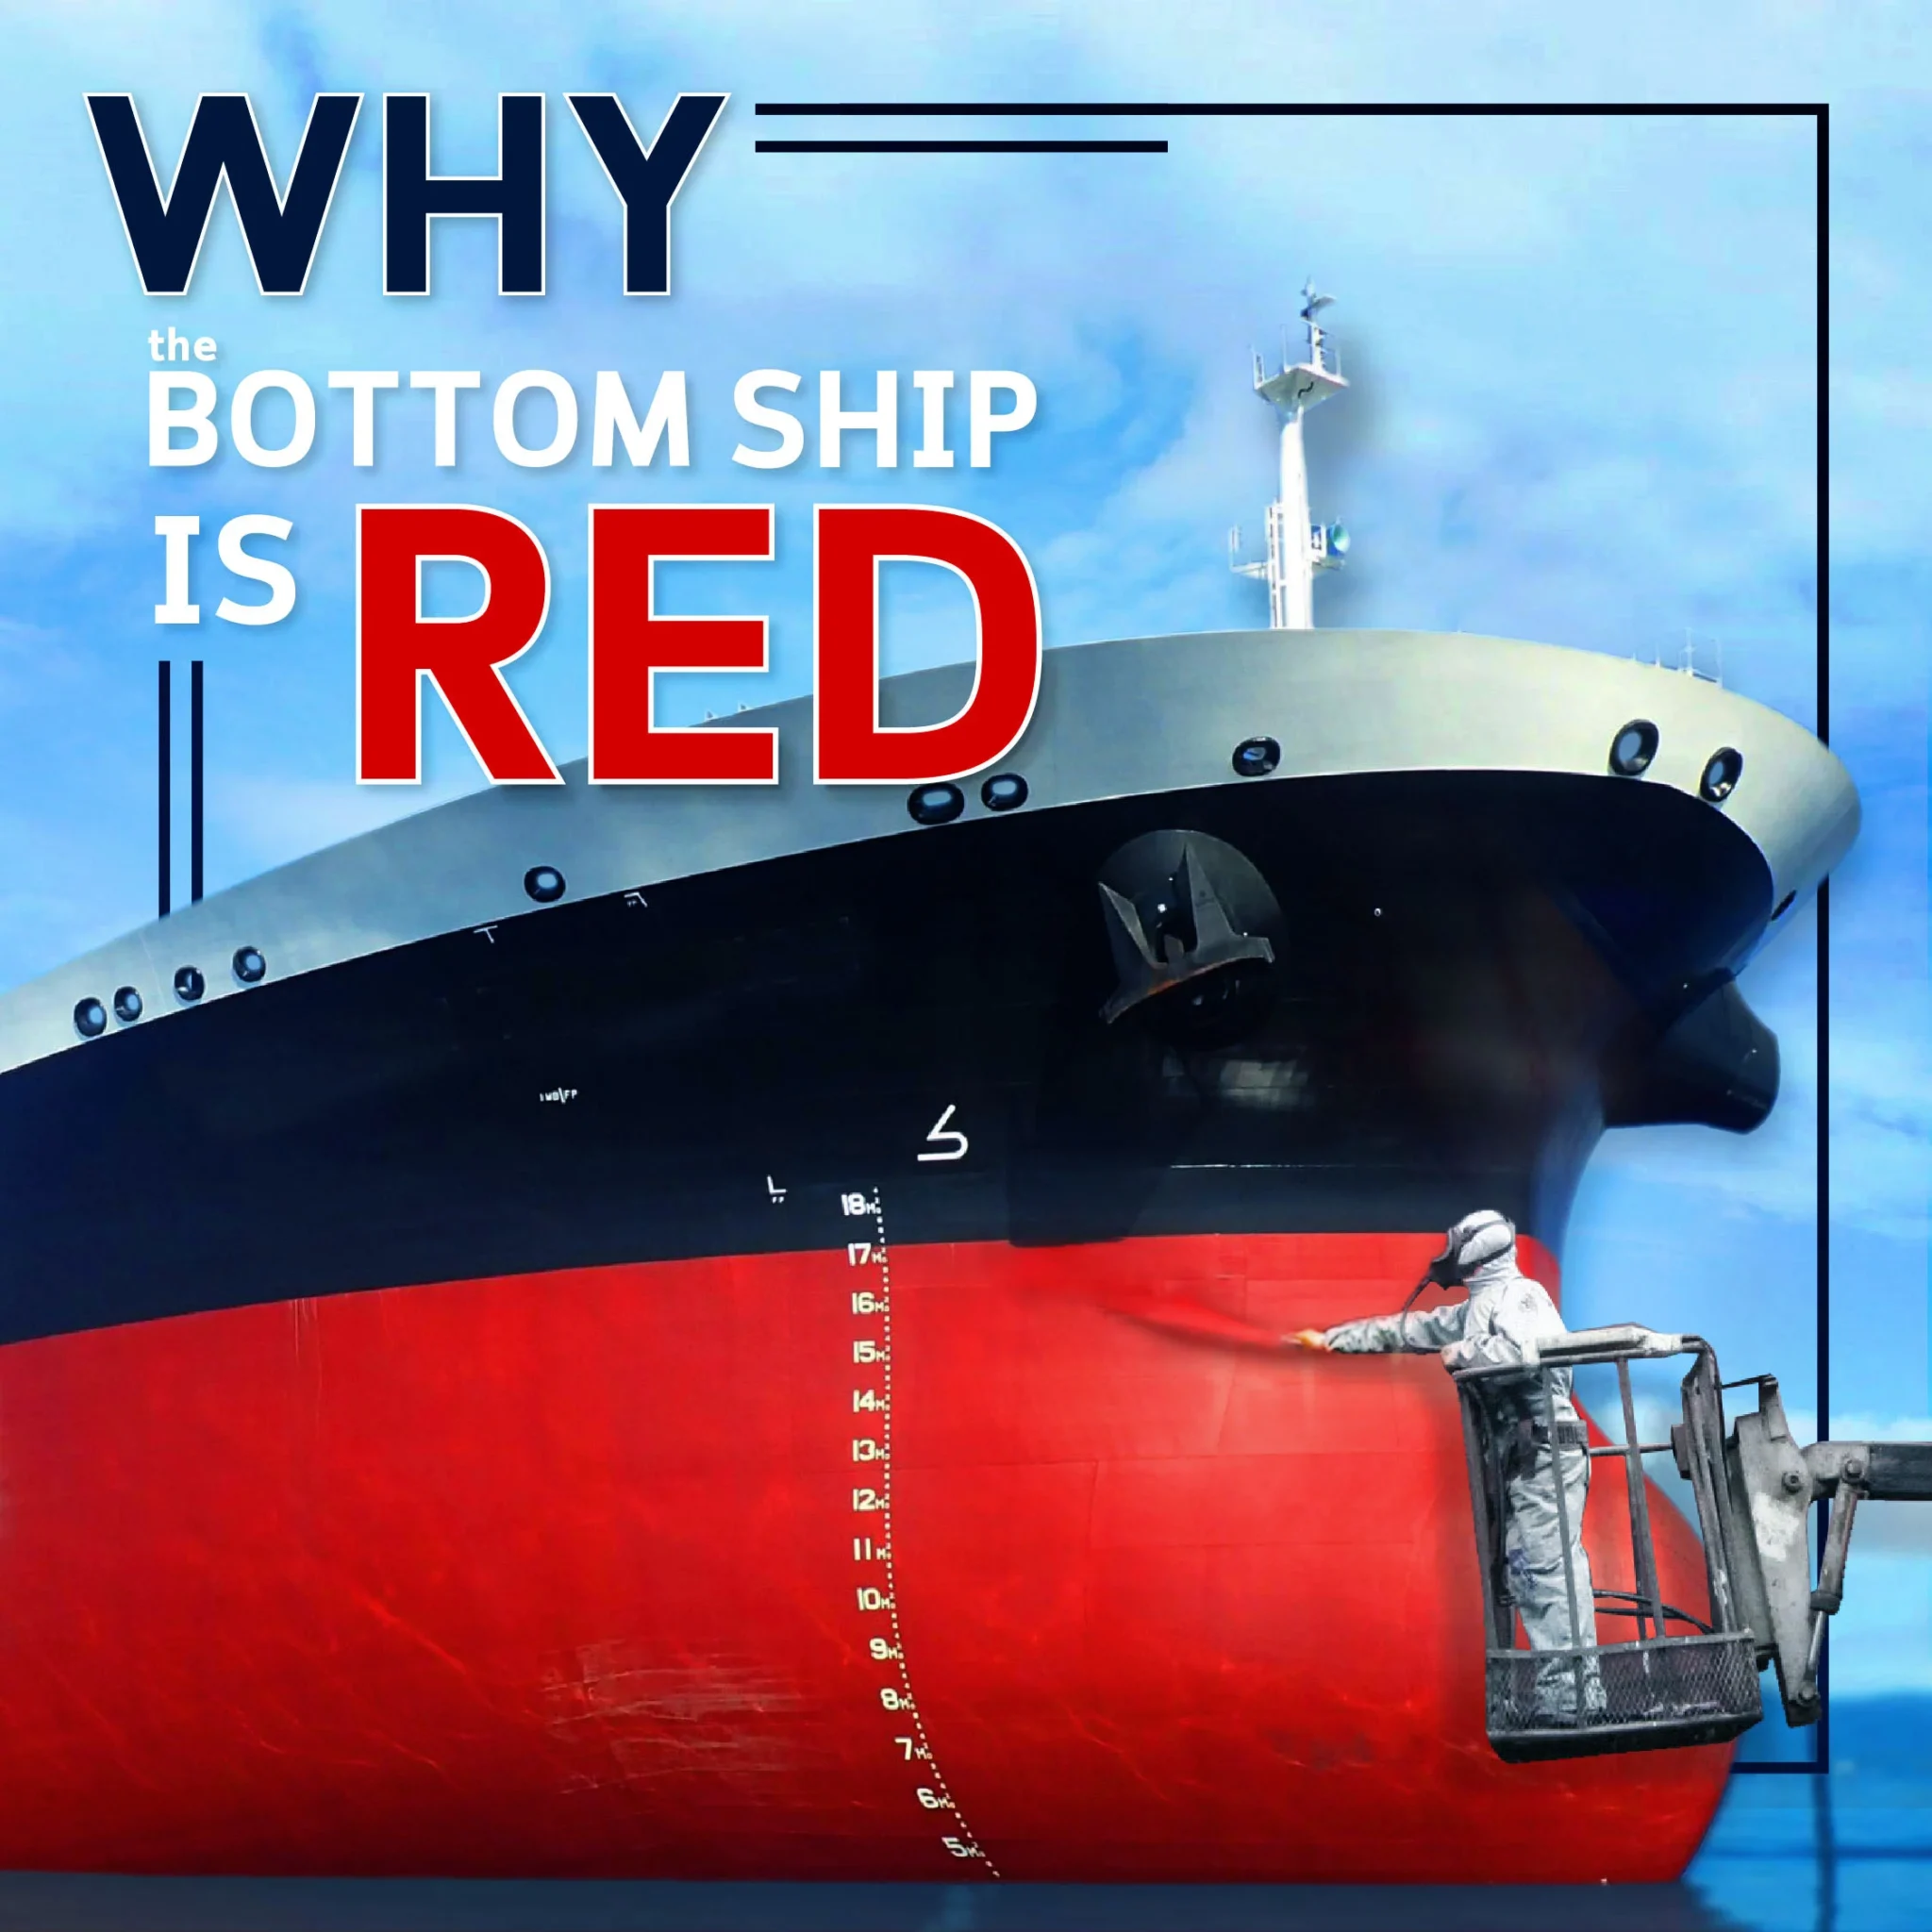 ทำไมท้องเรือเดินทะเลต้องทาสีแดง?